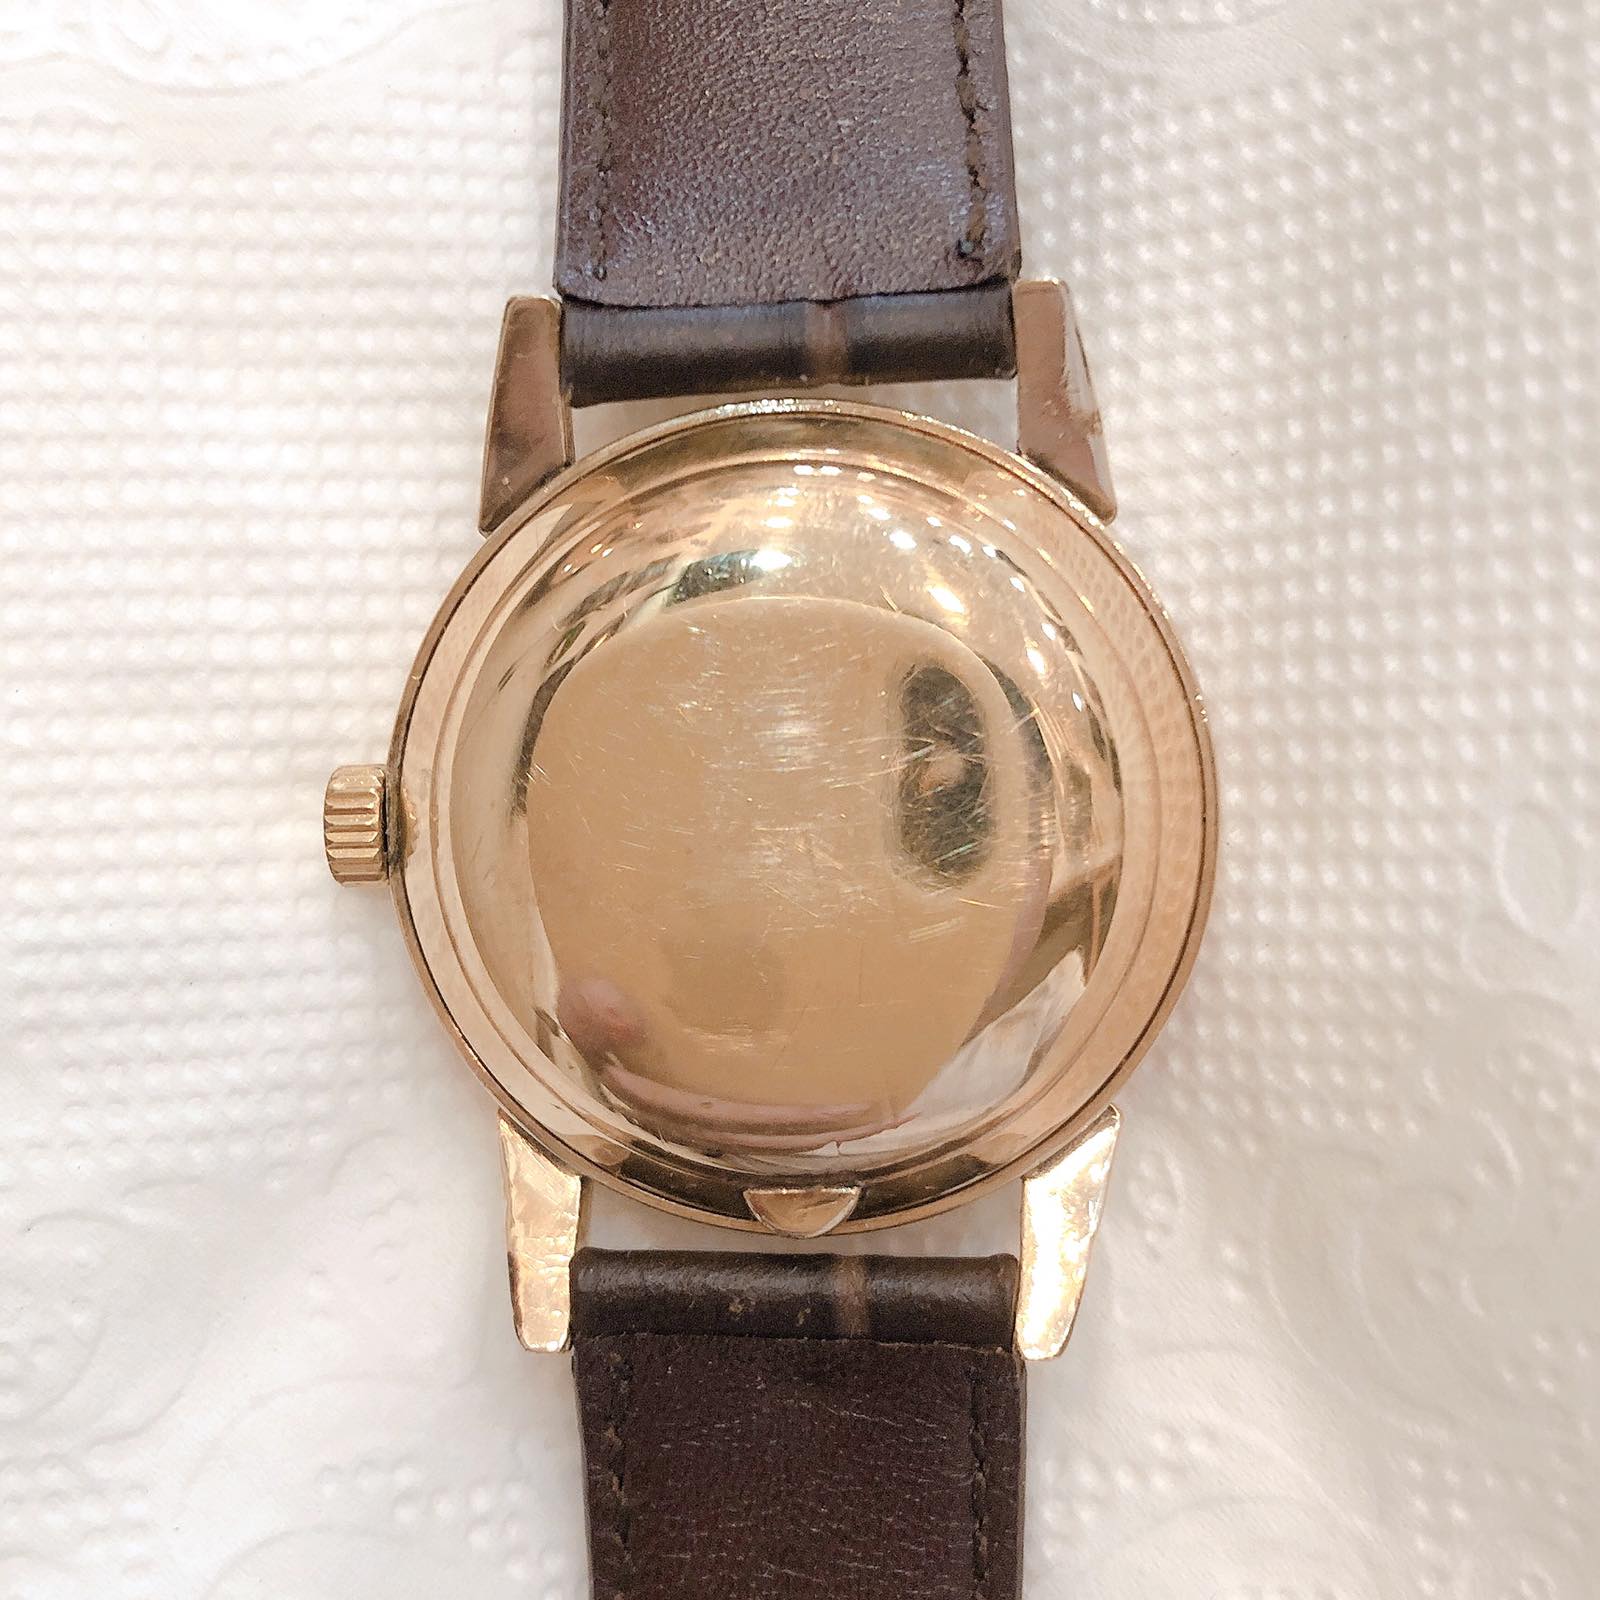 Đồng hồ cổ SETH THOMAS Automatic bọc vàng 10k Gold Filled chính hãng Thụy Sỹ